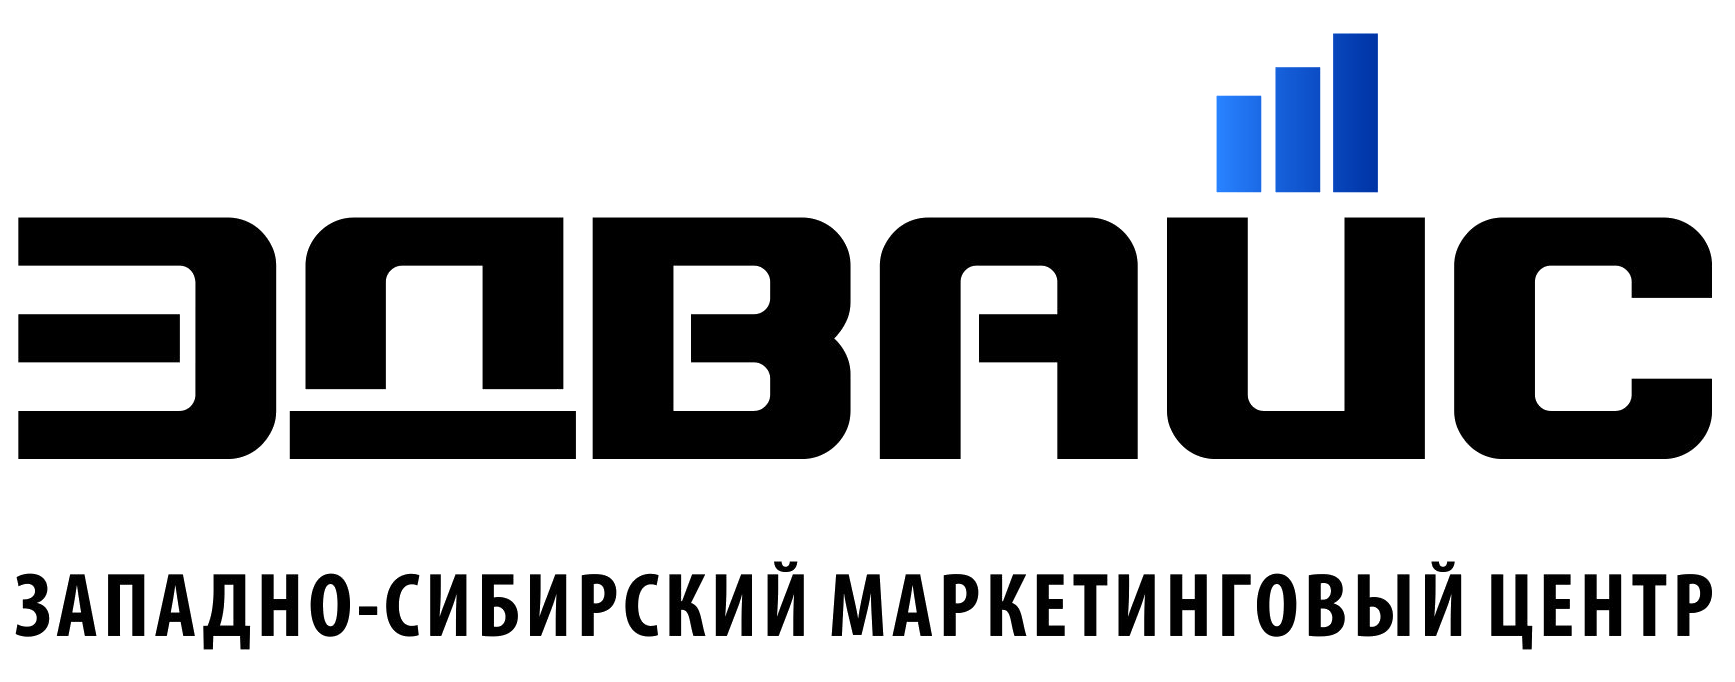 Западно-Сибирский Маркетинговый Центр Эдвайс: отзывы от сотрудников и партнеров